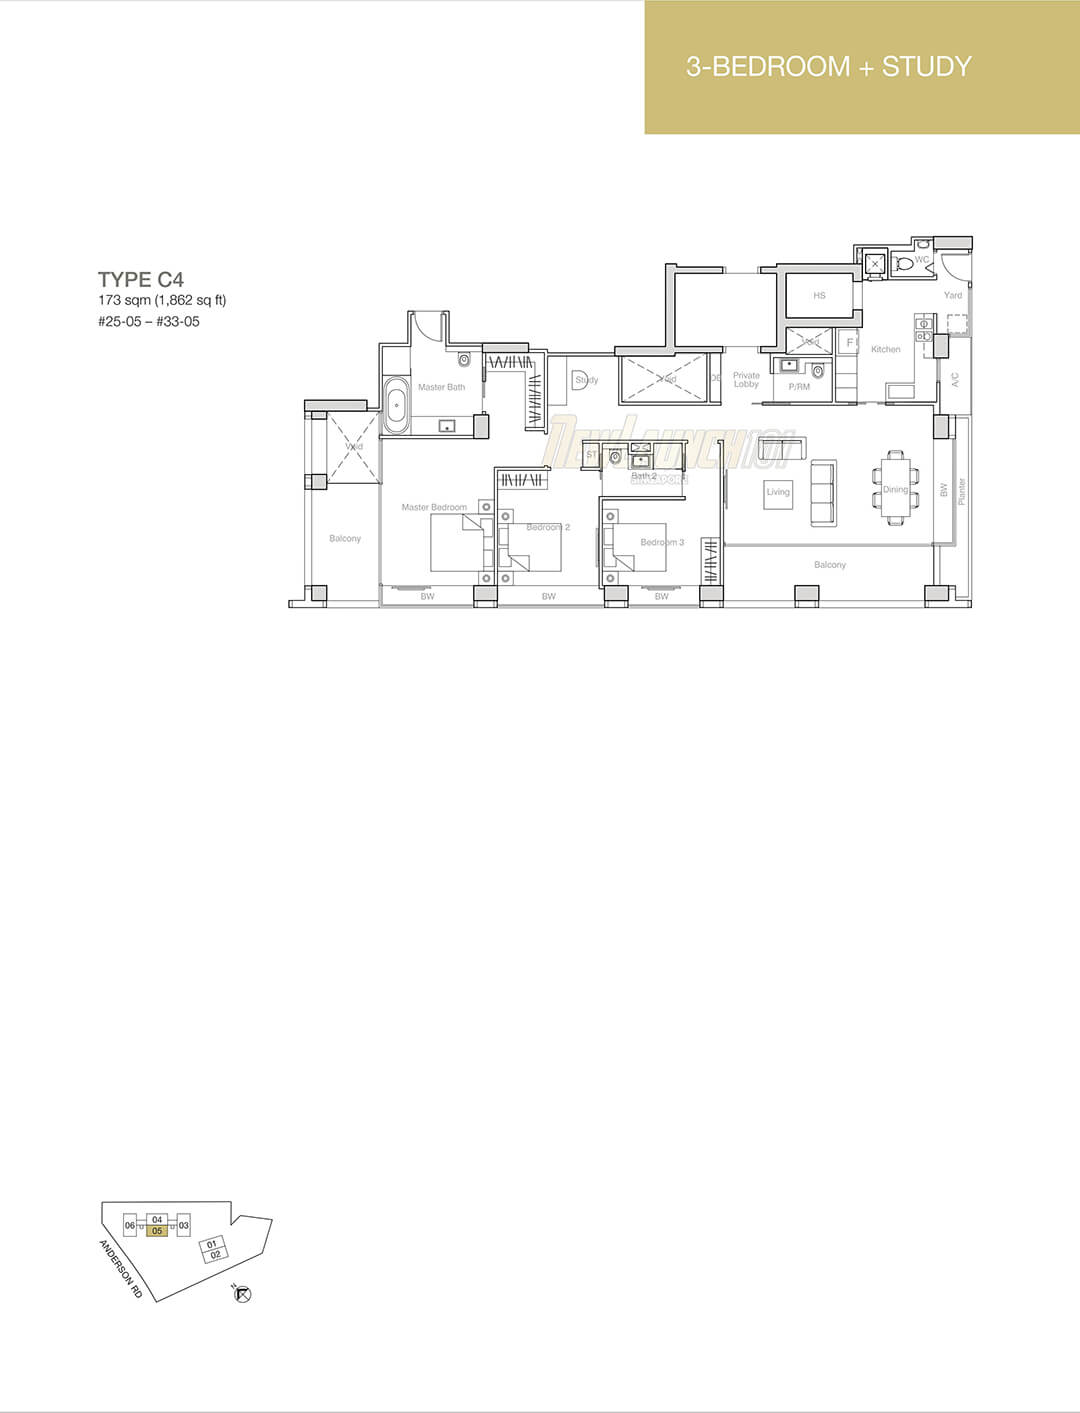 Nouvel 18 Floor Plan 3-Bedroom Study Type C4